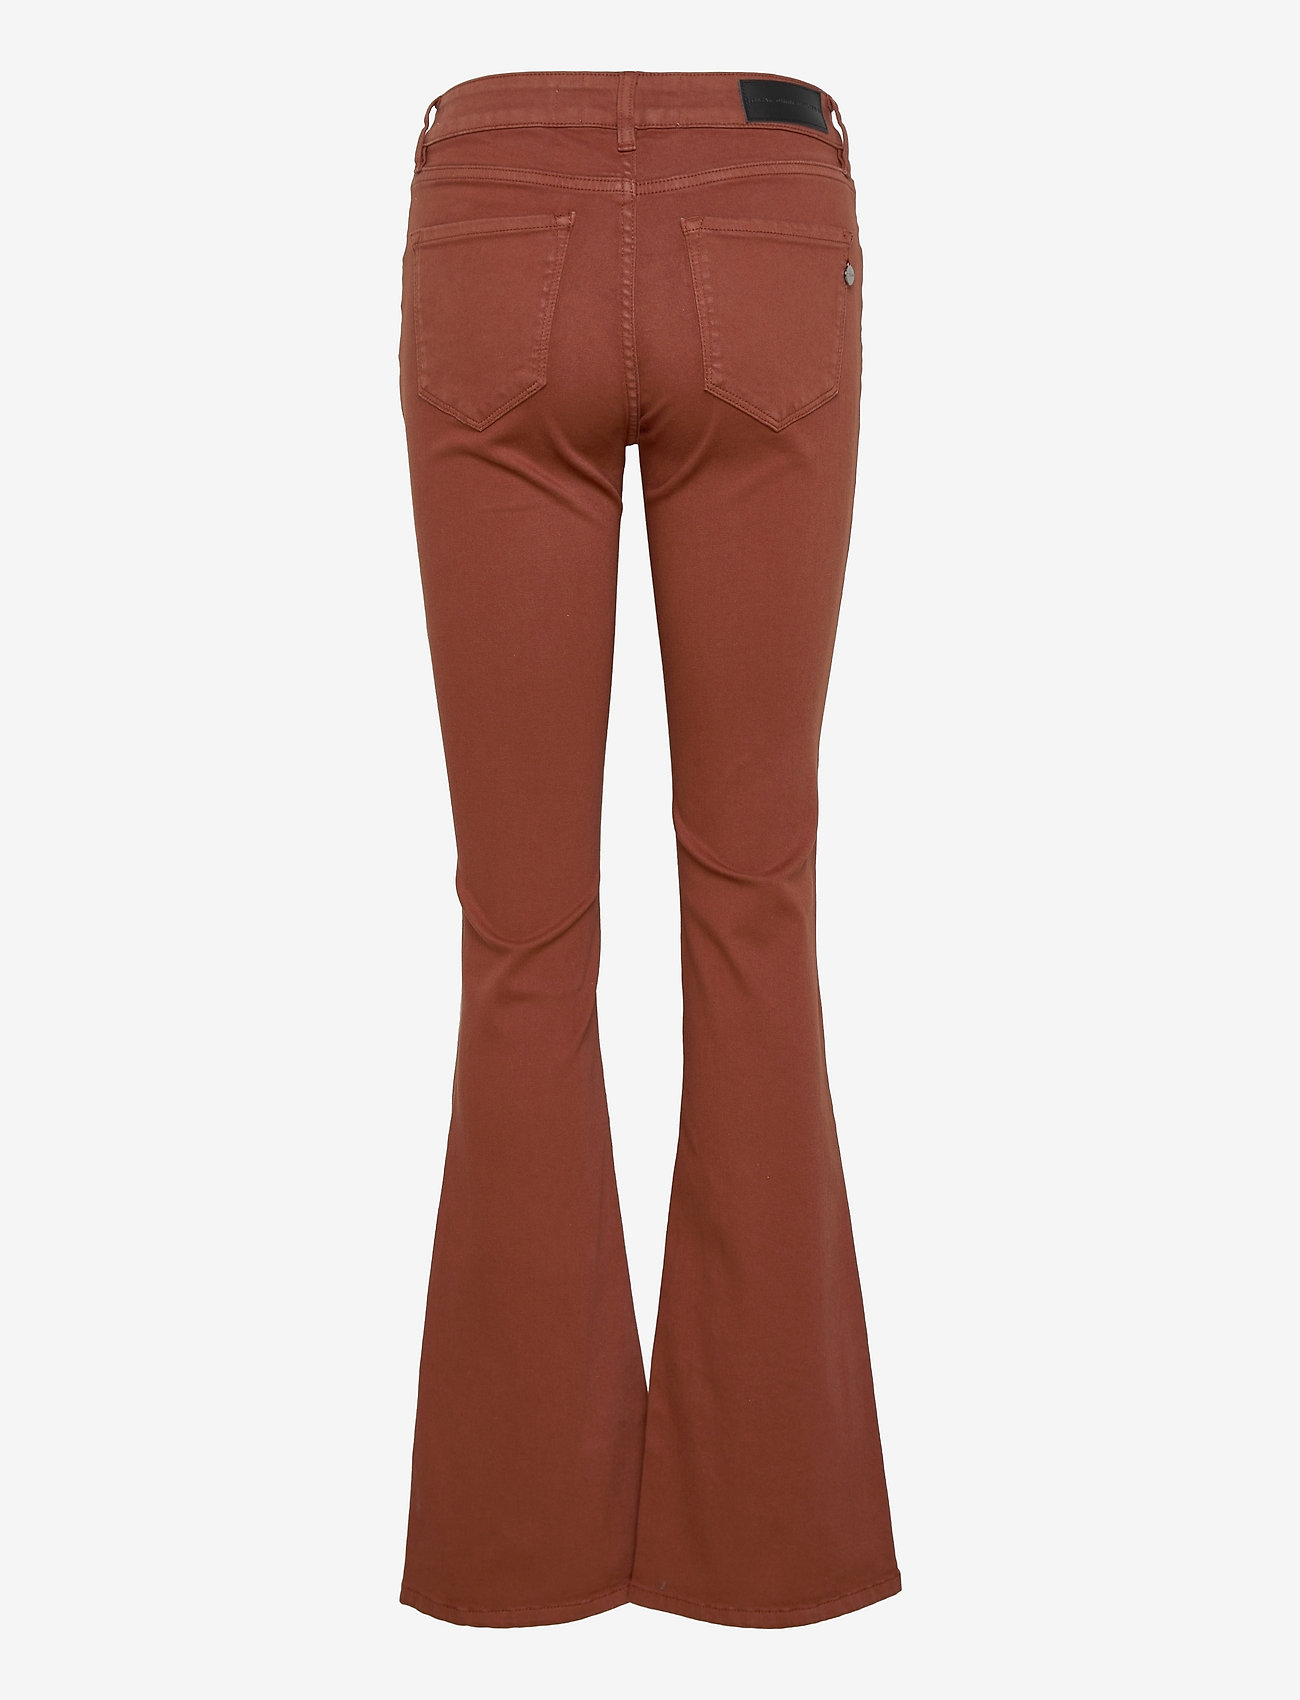 Pieszak - Marija flare jeans Col. - schlaghosen - brown - 1